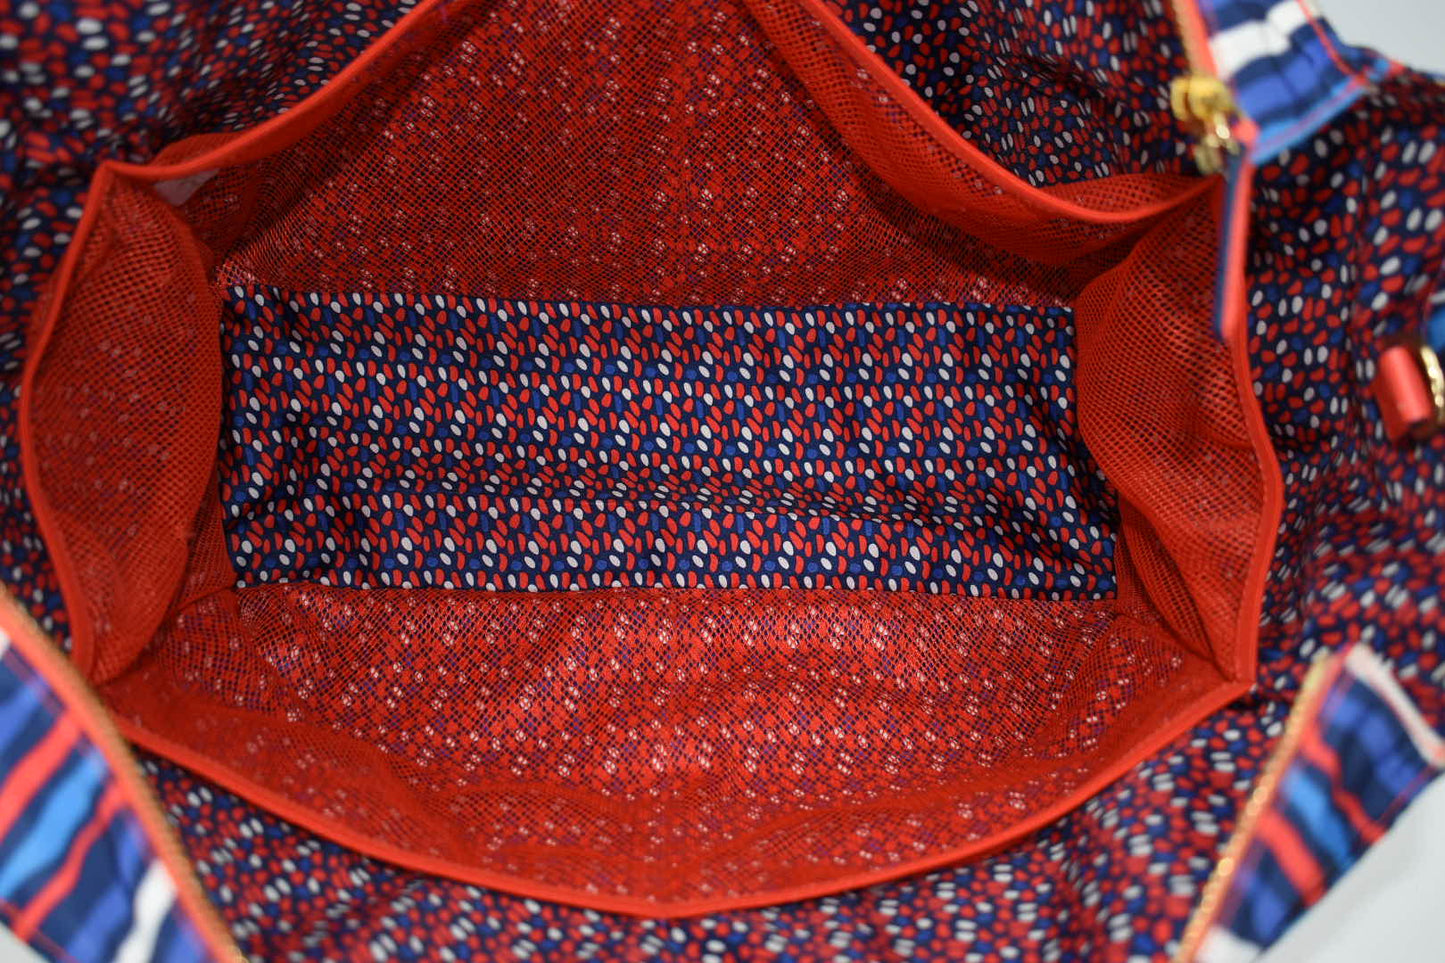 Vera Bradley Preppy Poly Large Tote Bag in "Cobalt Stripe" Pattern